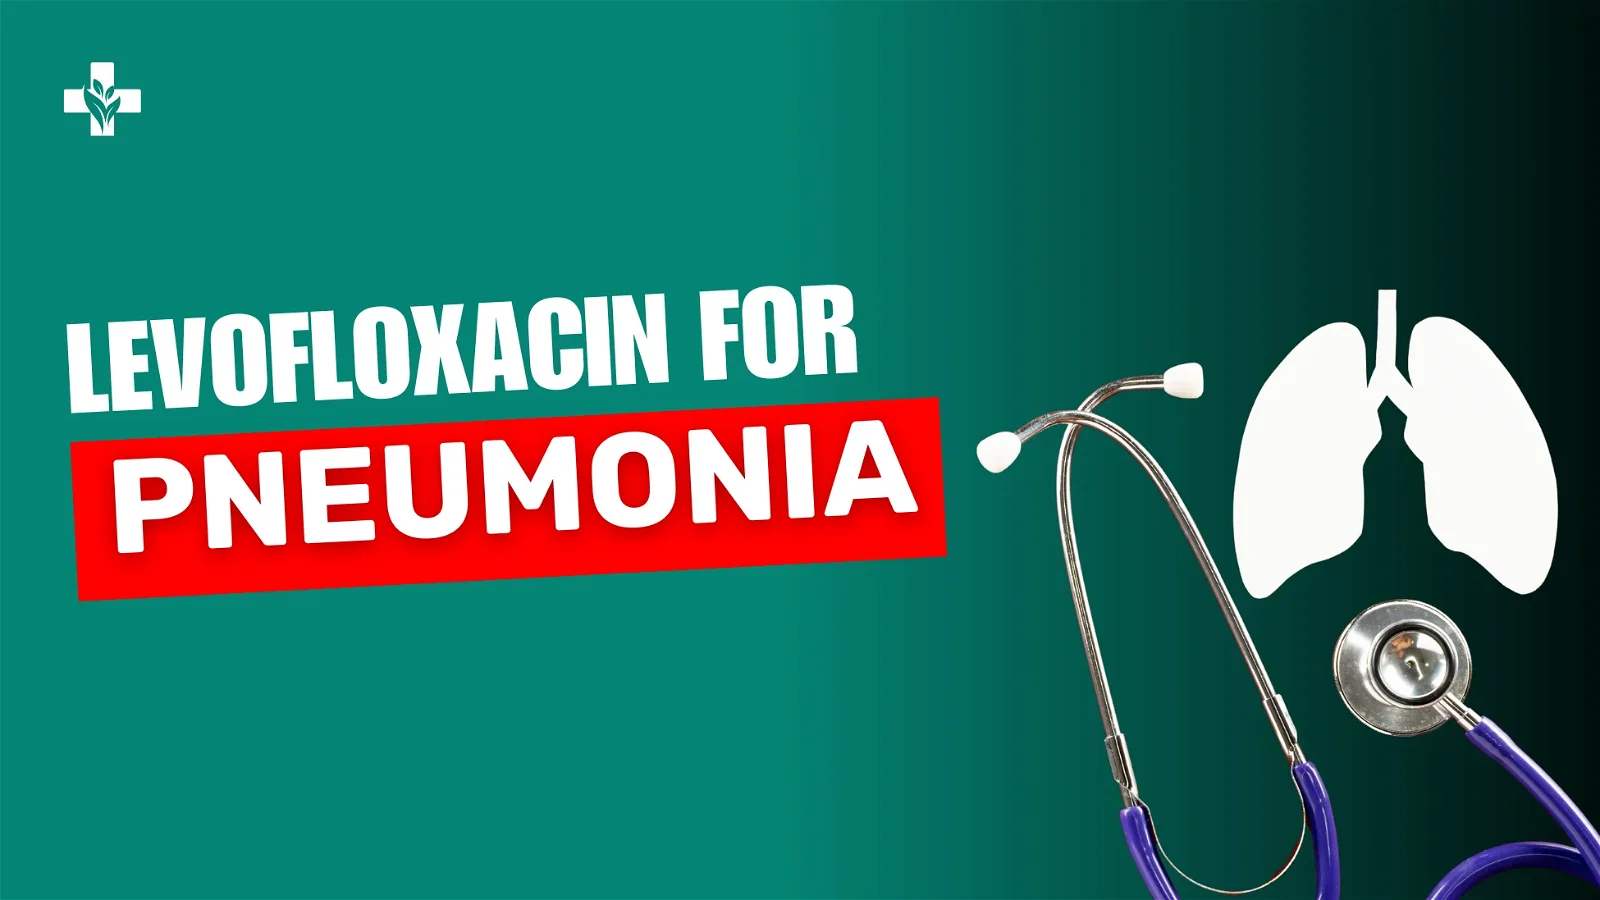 Levofloxacin for Pneumonia